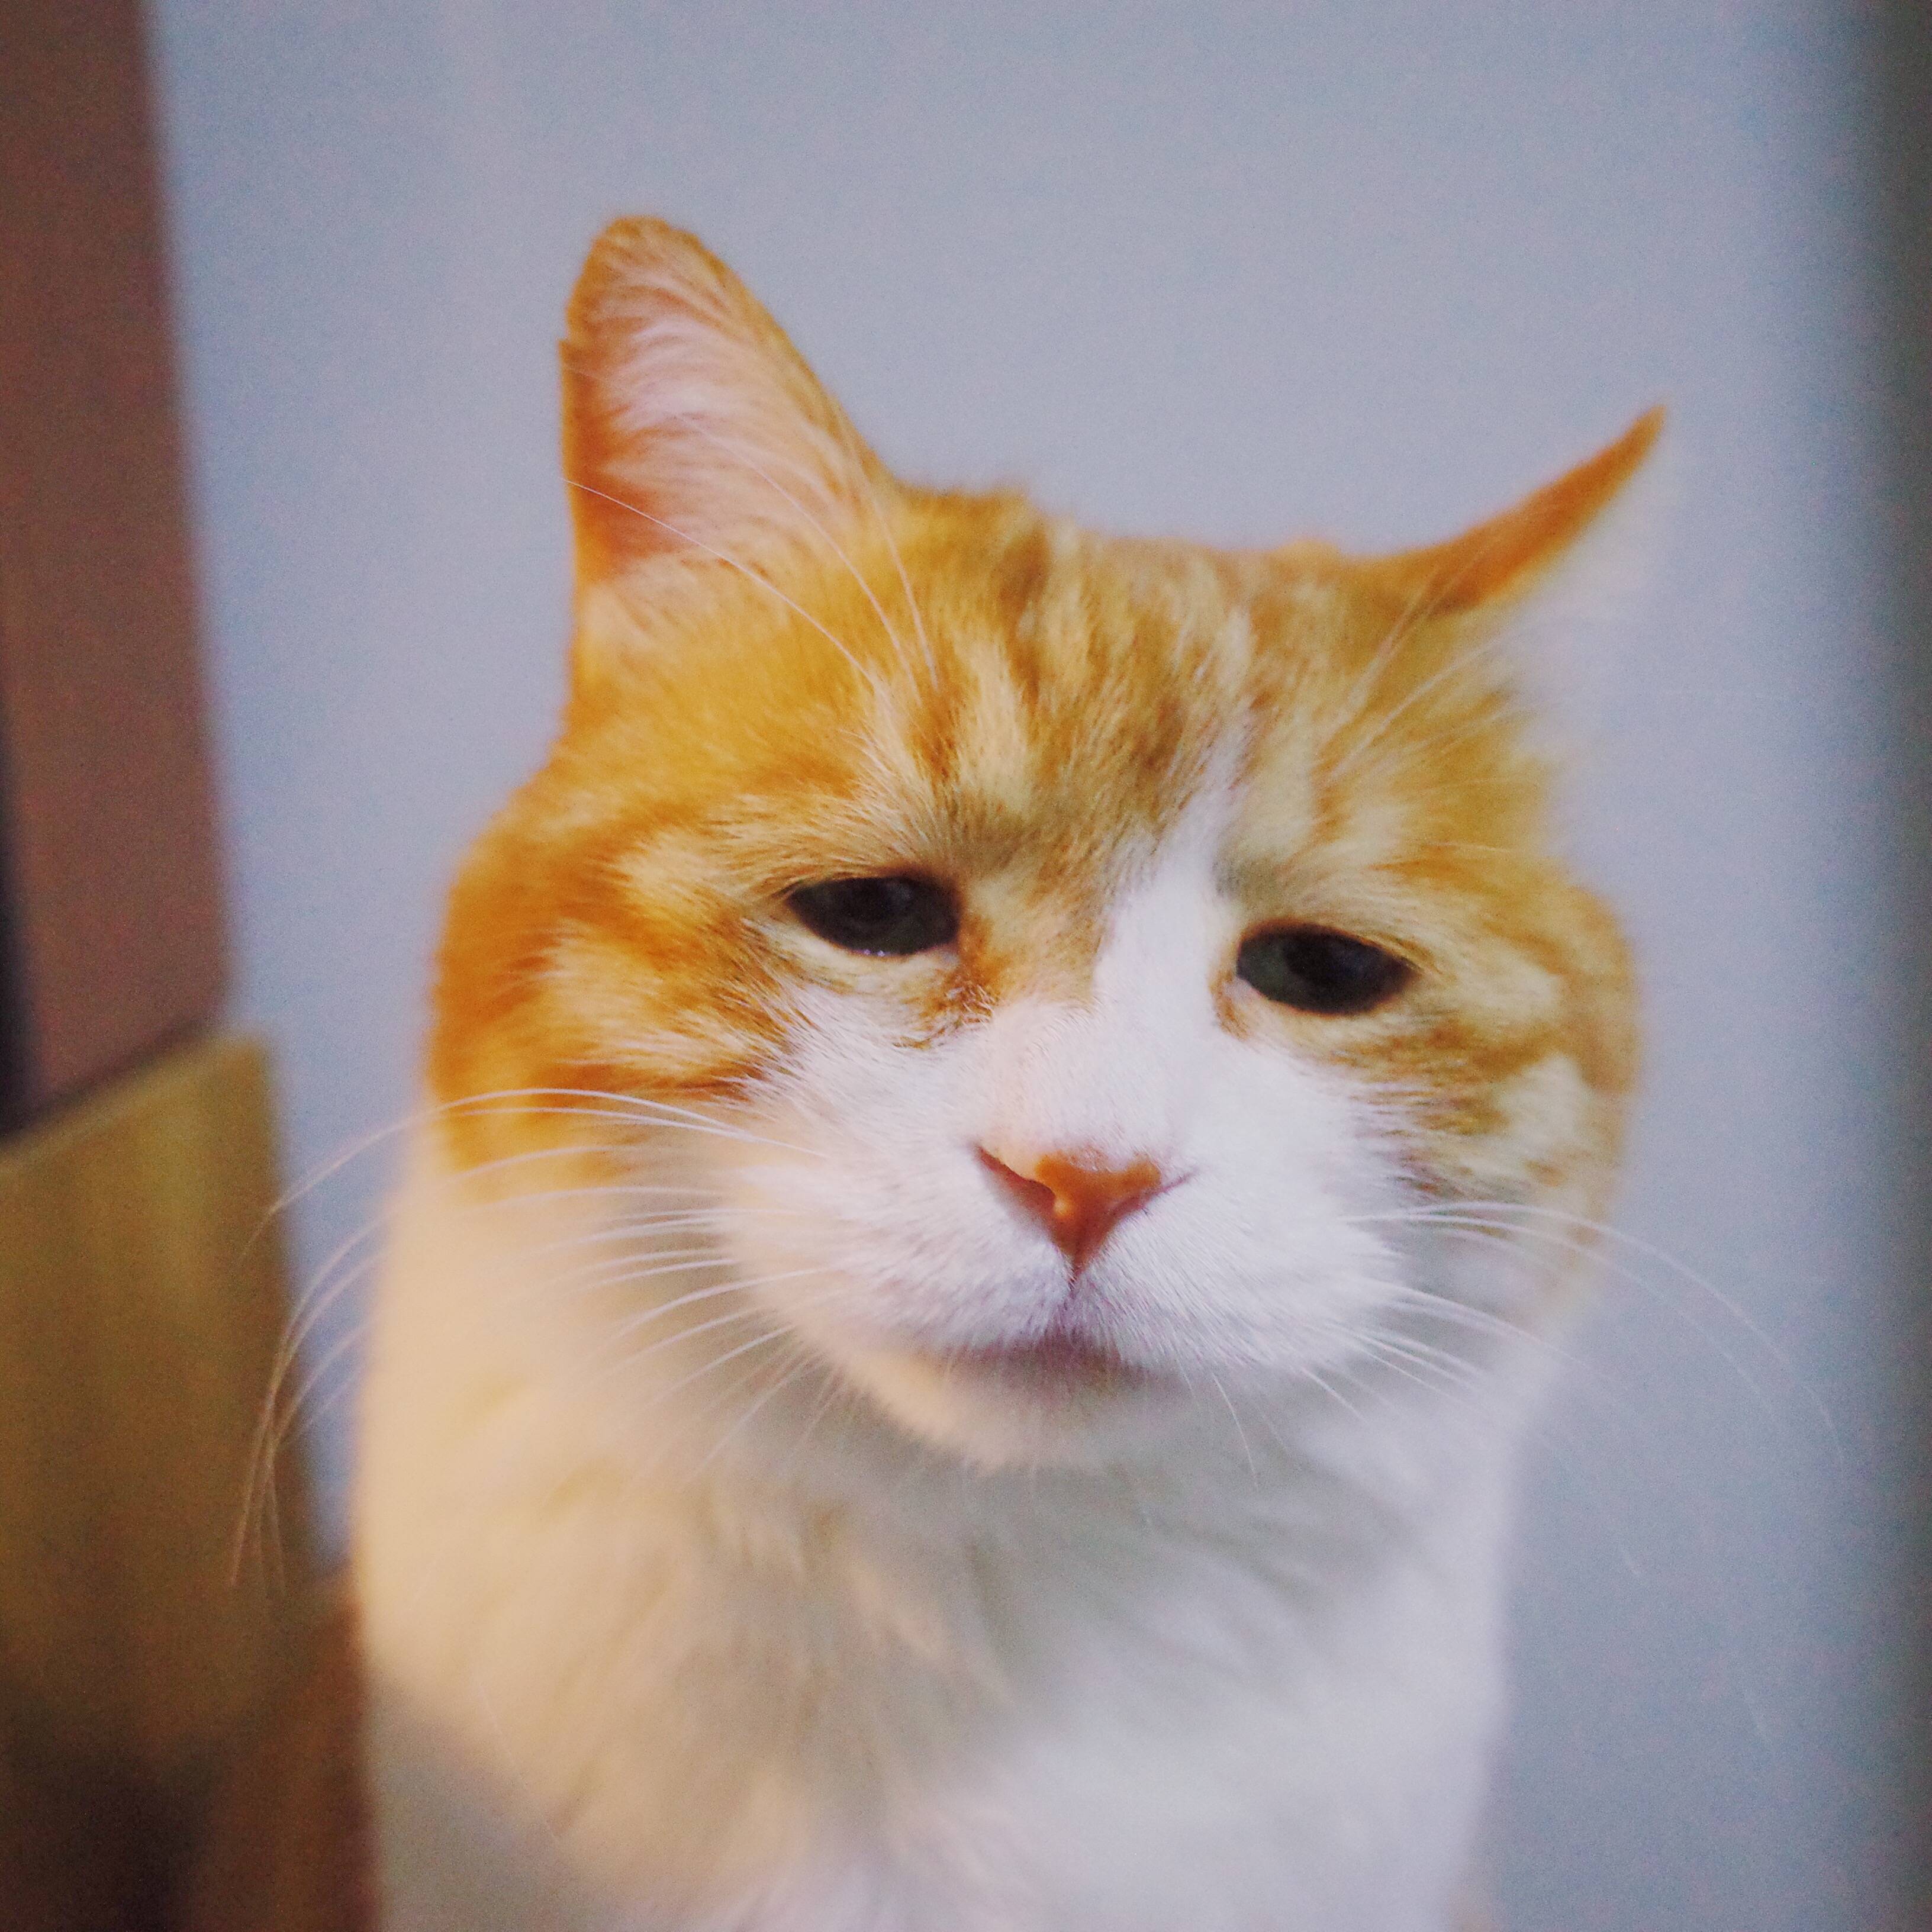 主人家一只伤心的橘猫,心情很低落,网友:好心疼哦!